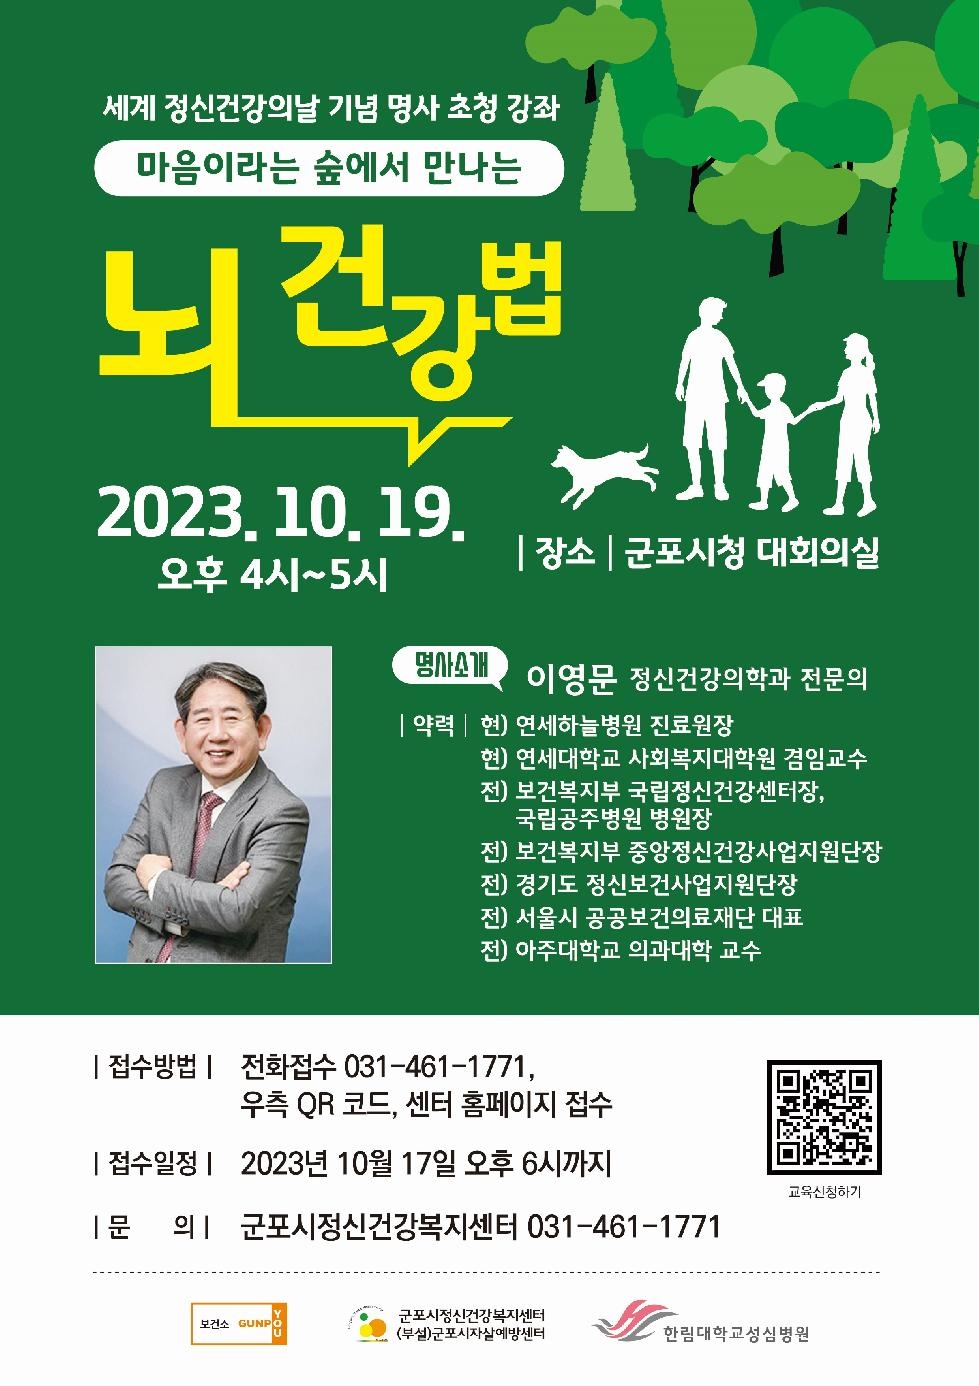 군포시정신건강복지센터 세계 정신건강의 날 시민강좌 개최